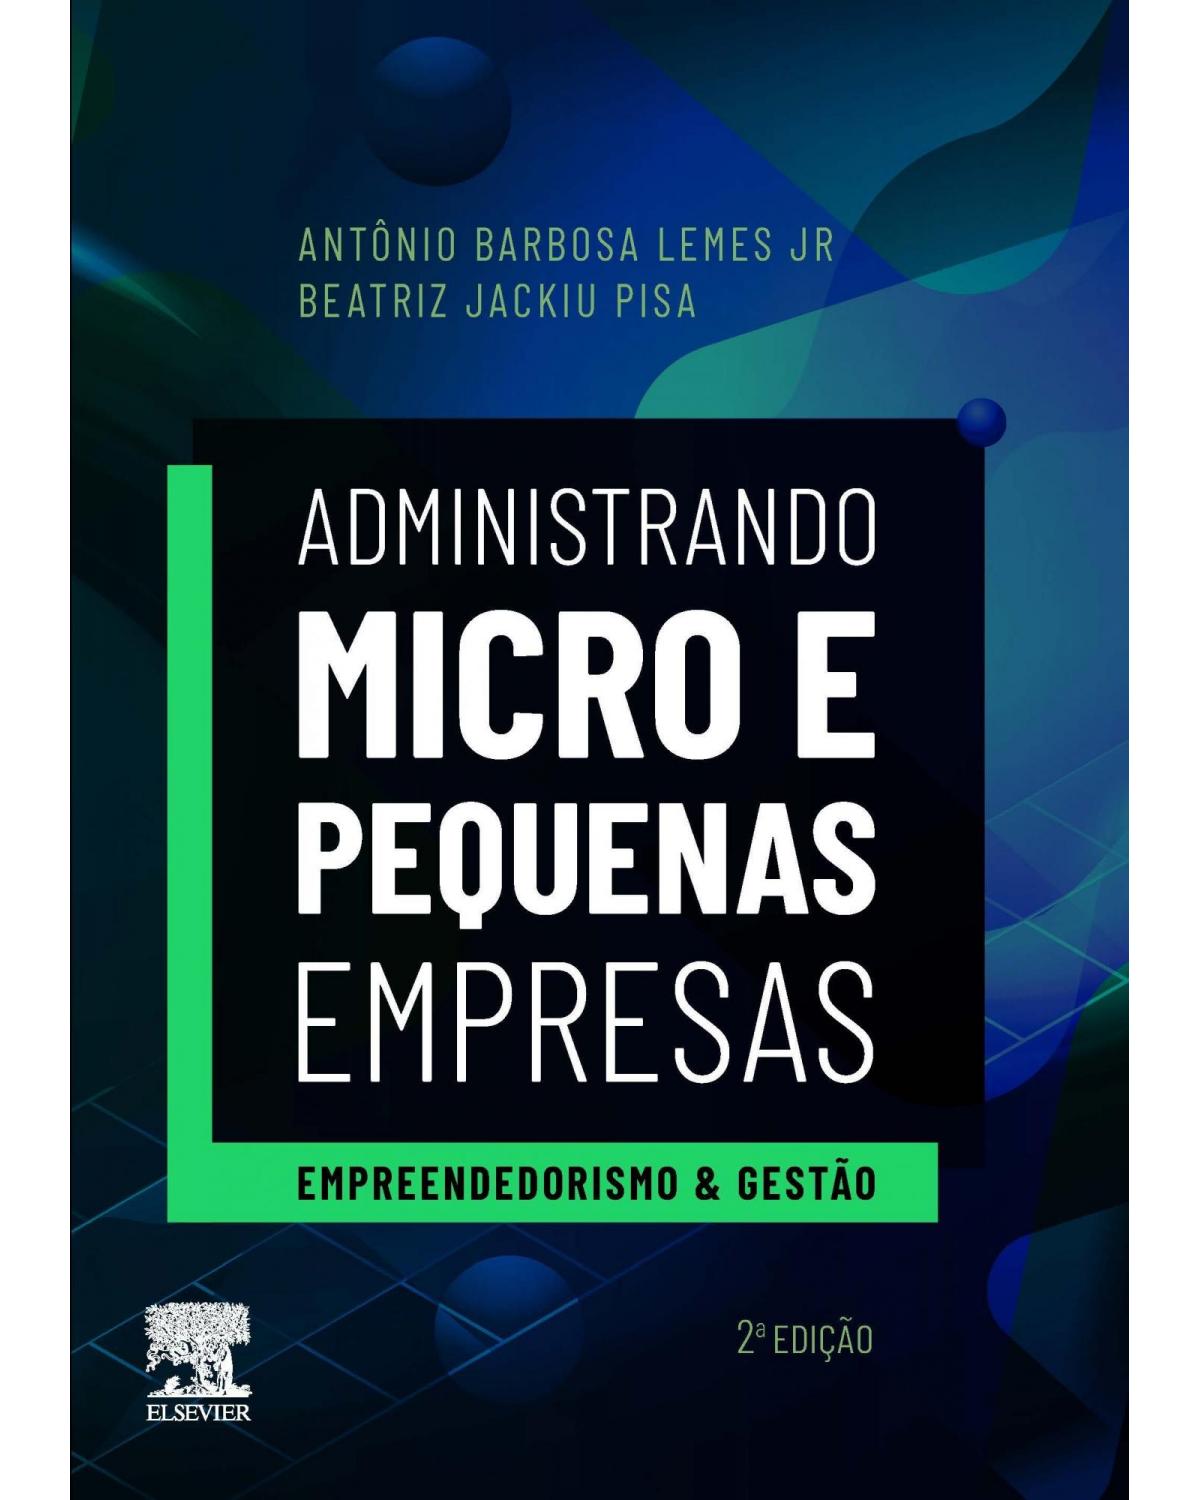 Administrando micro e pequenas empresas - empreendedorismo e gestão - 2ª Edição | 2019